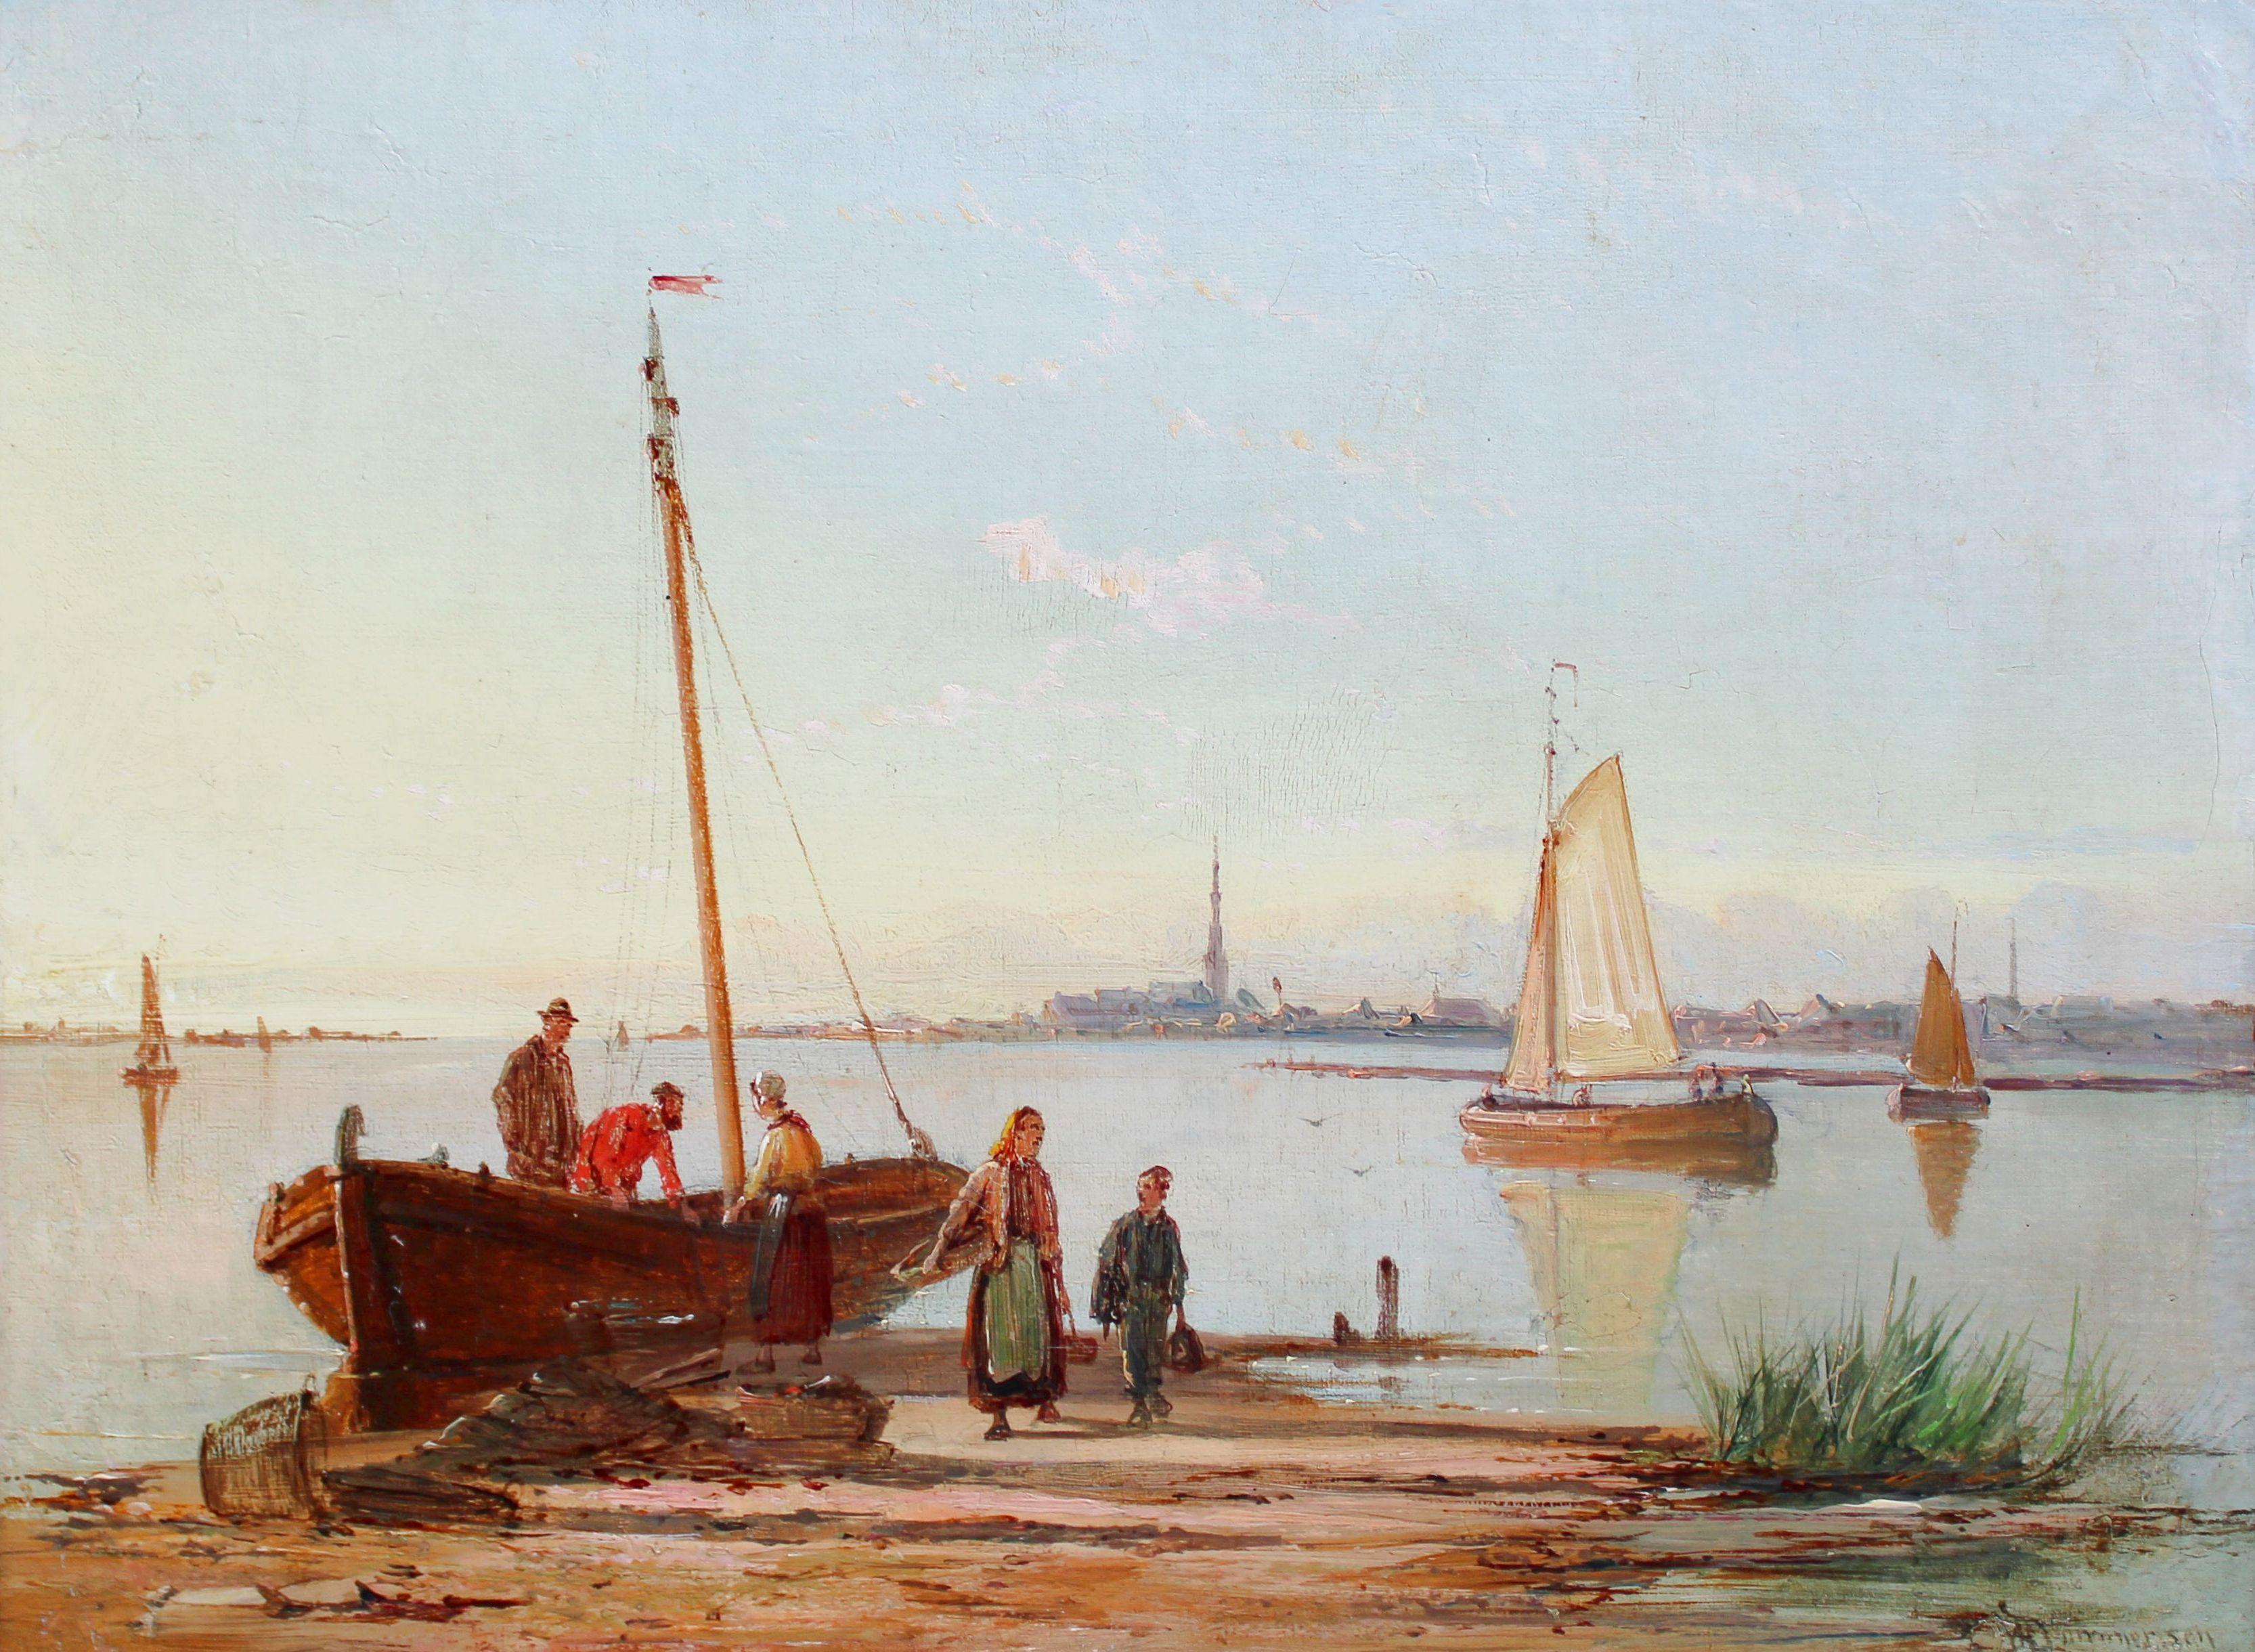 Landscape Painting Dommersen, William Raymond - Paysage d'estuaire néerlandais  Huile sur toile, 30x40,5 cm